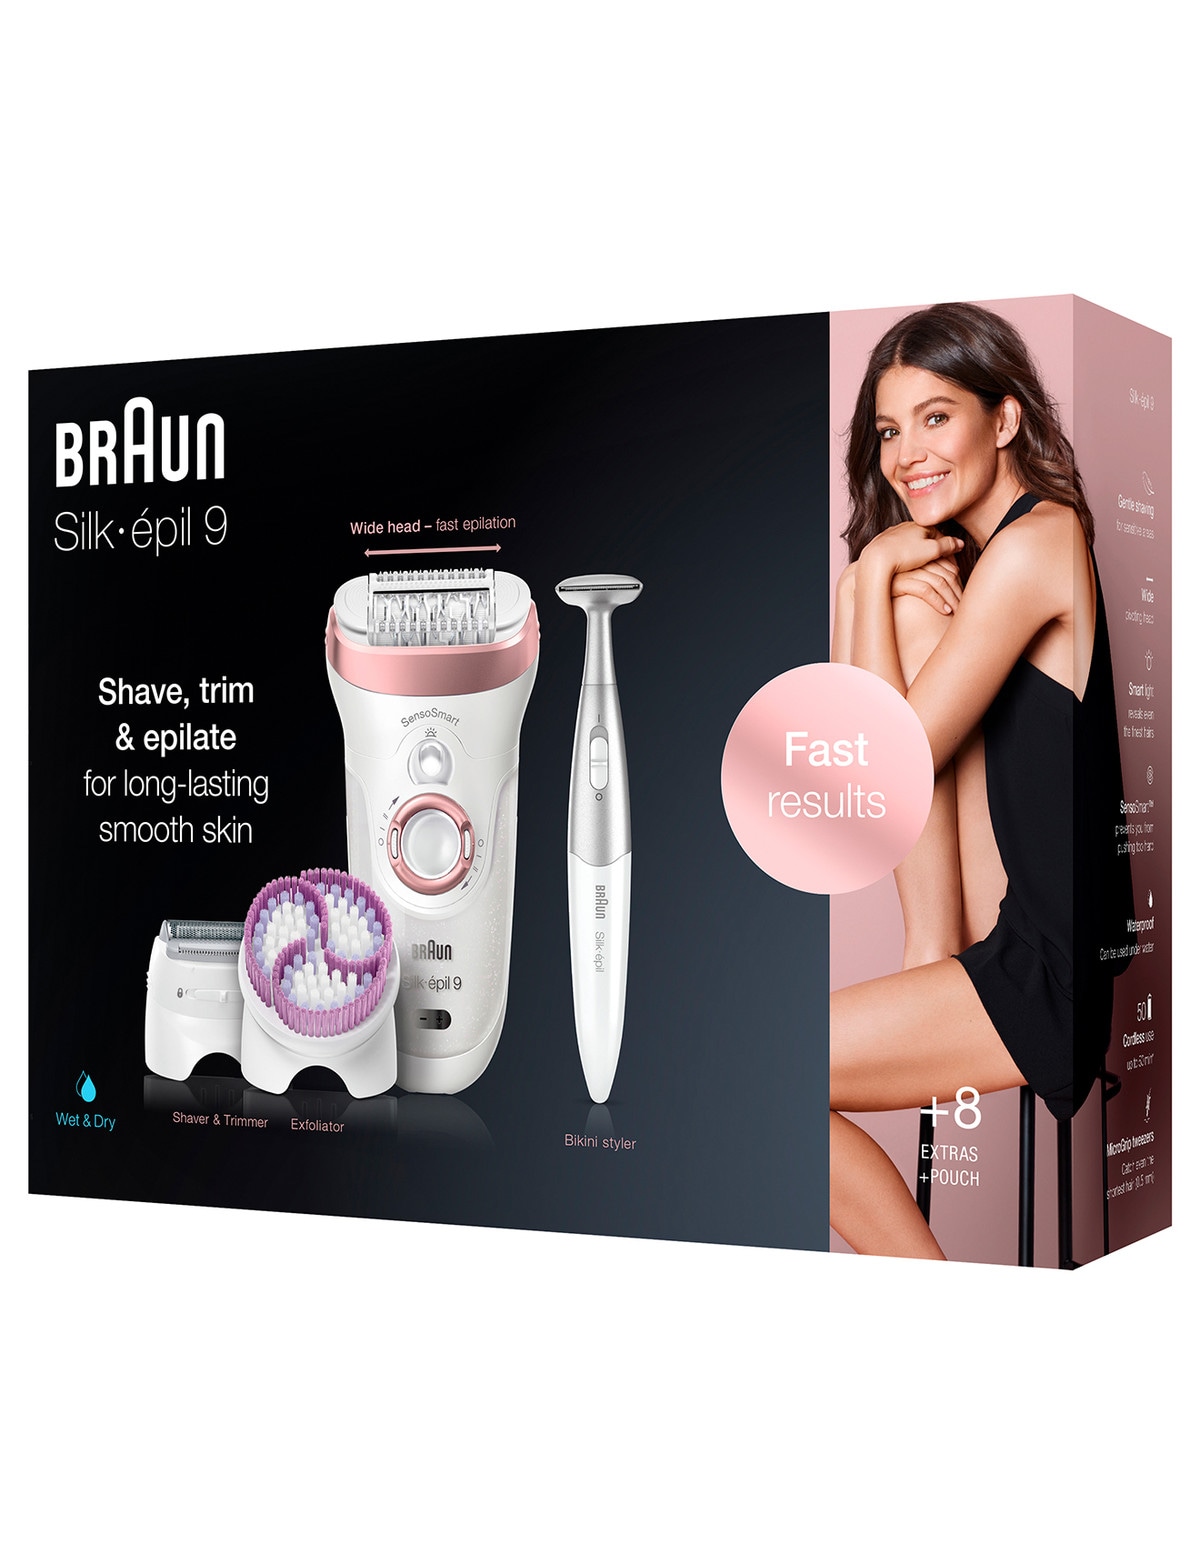 Braun, Silk-Epil 9 Skin Spa Senso Smart